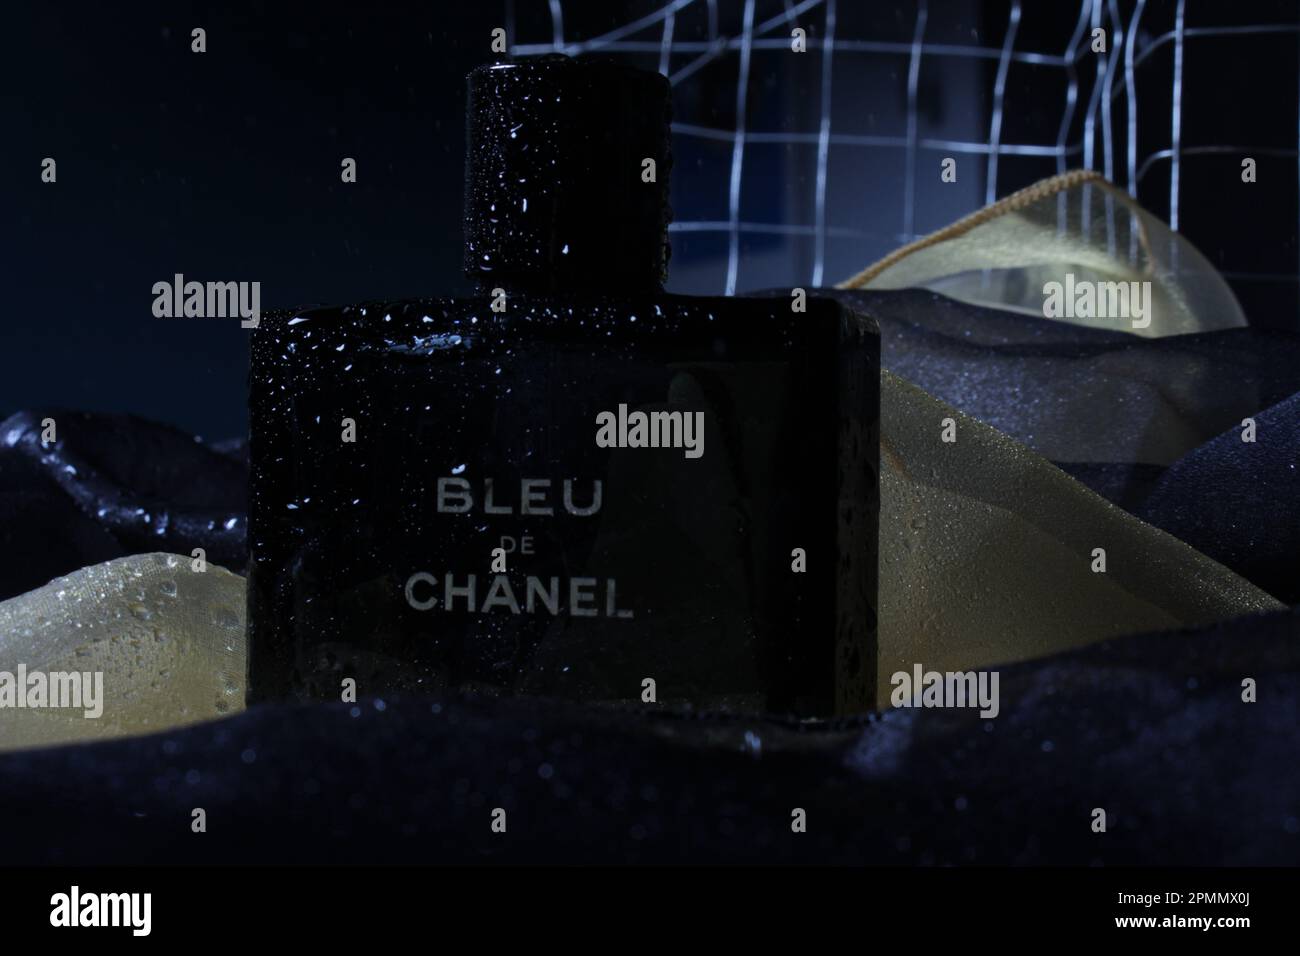 Bleu De Chanel Stock Photos - Free & Royalty-Free Stock Photos from  Dreamstime